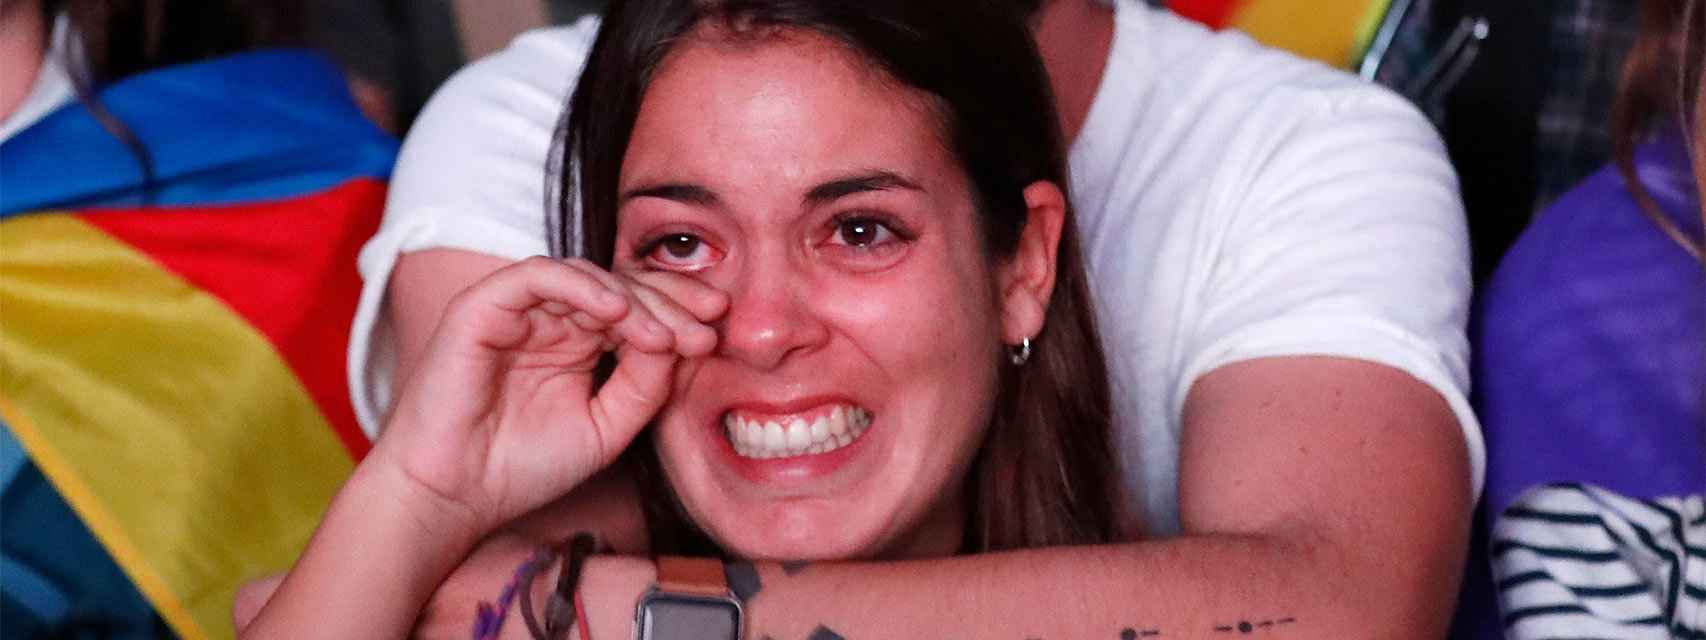 La reacción de una chica tras escuchar la declaración de Puigdemont.